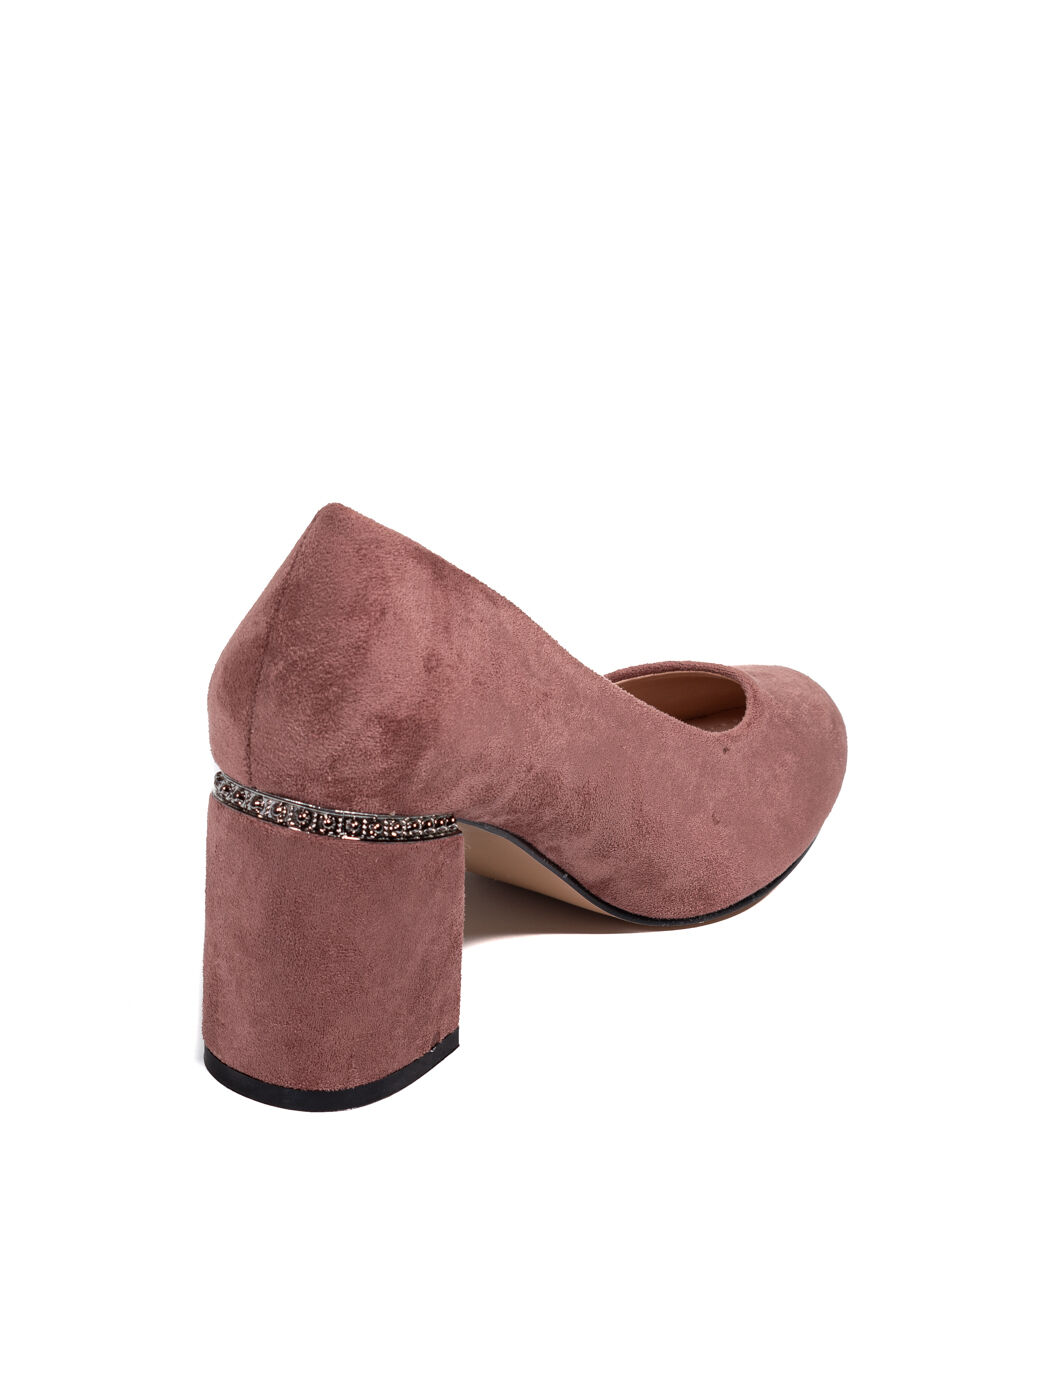 Туфли женские розовые экозамша каблук устойчивый демисезон DM вид 2